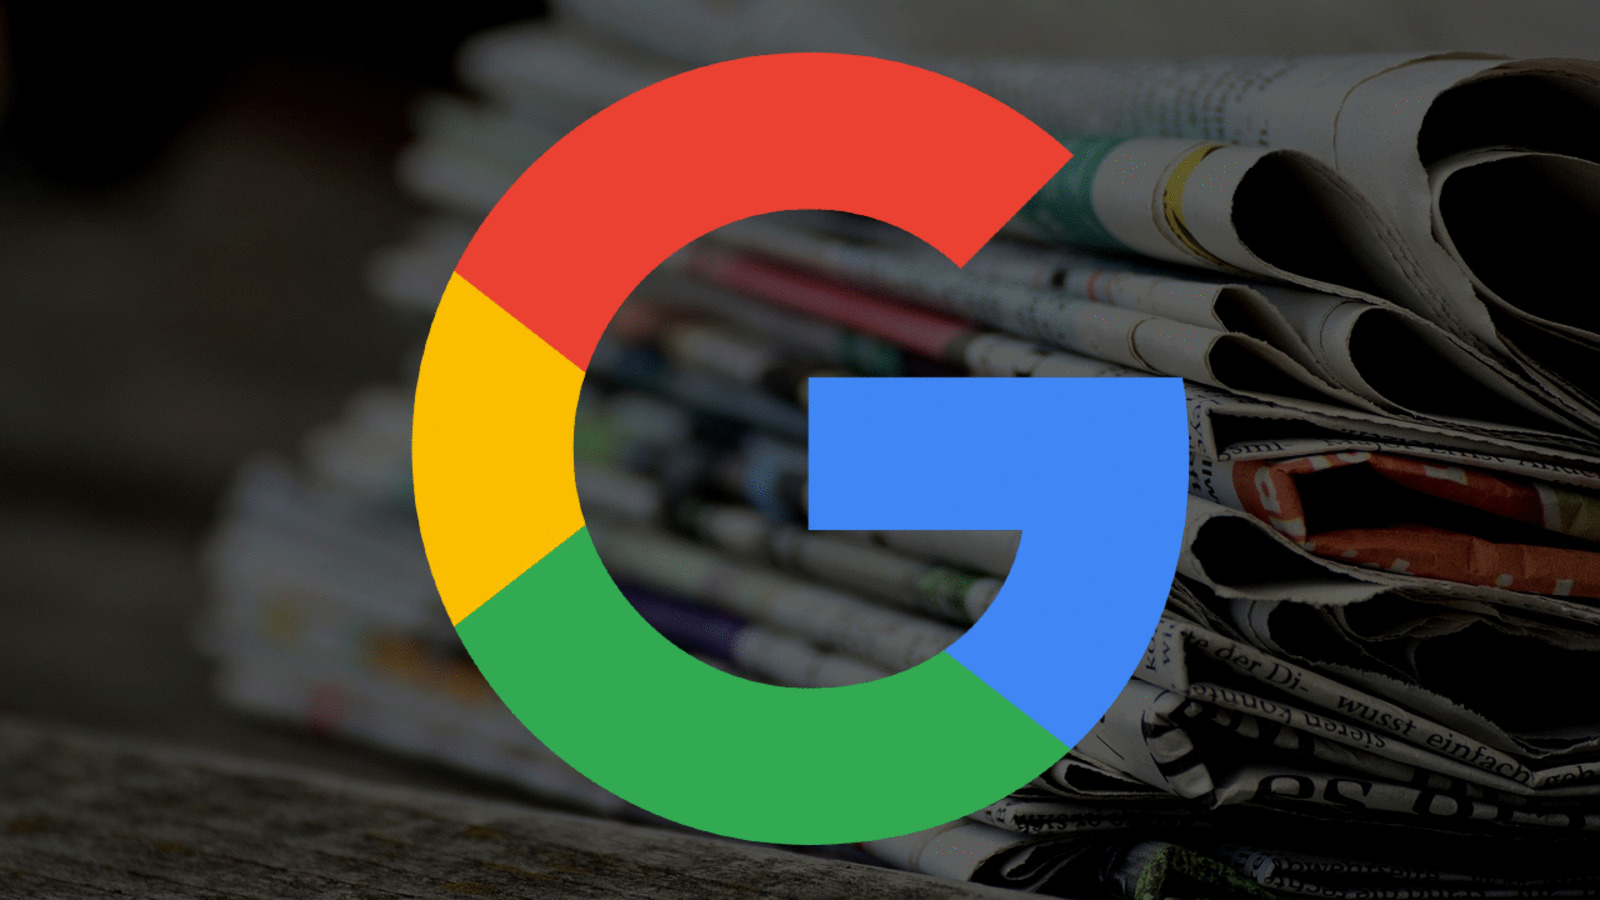 Droits voisins et presse : Google prend des engagements, l'Autorité de la concurrence veut les tester